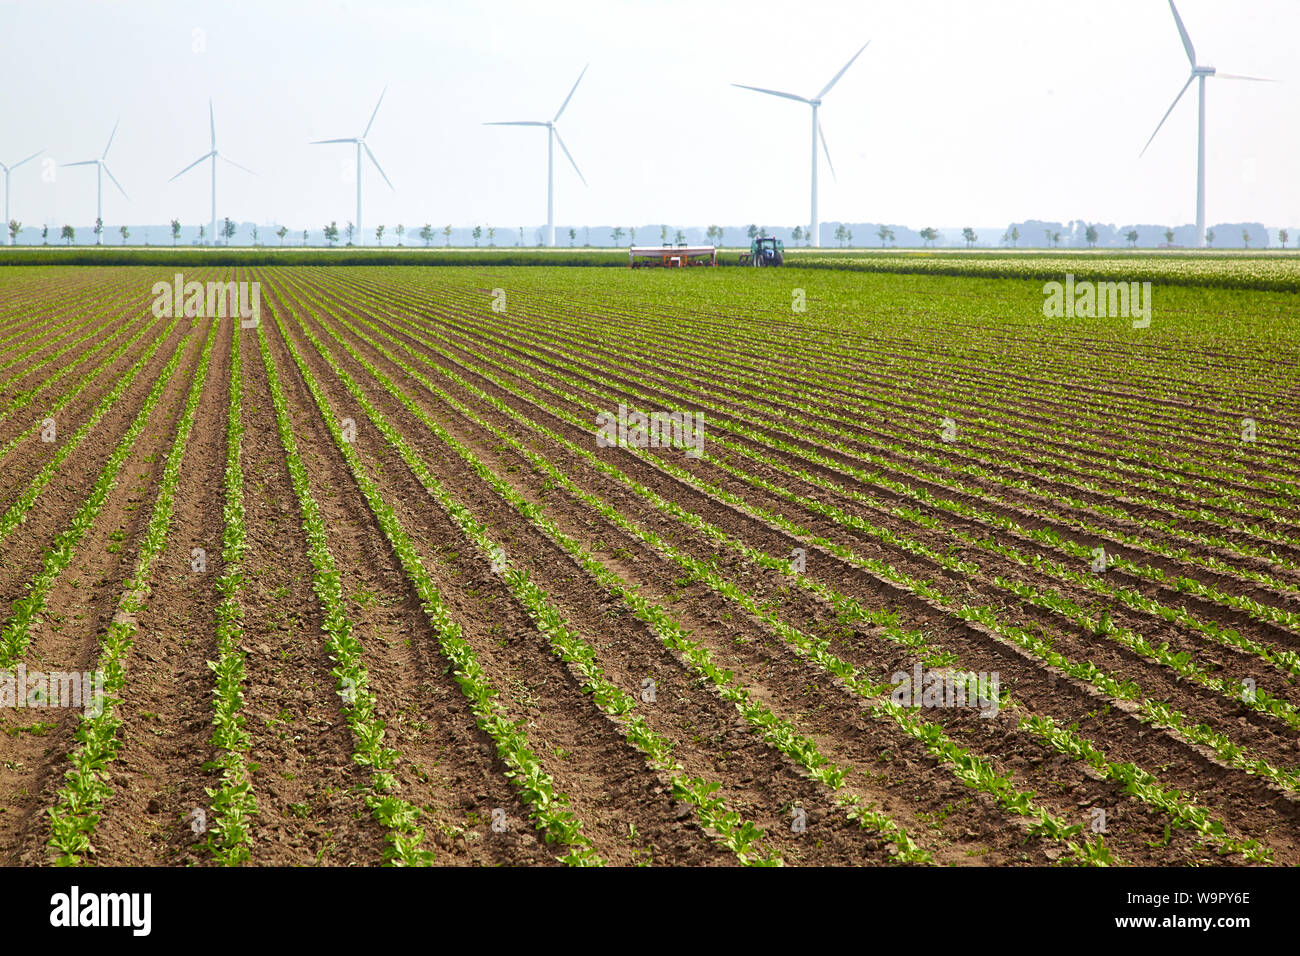 Grafico di allevamento con righe verticali di cicoria organici vegetali con in sottofondo un trattore la lavorazione del terreno e di una fila di turbine eoliche Foto Stock